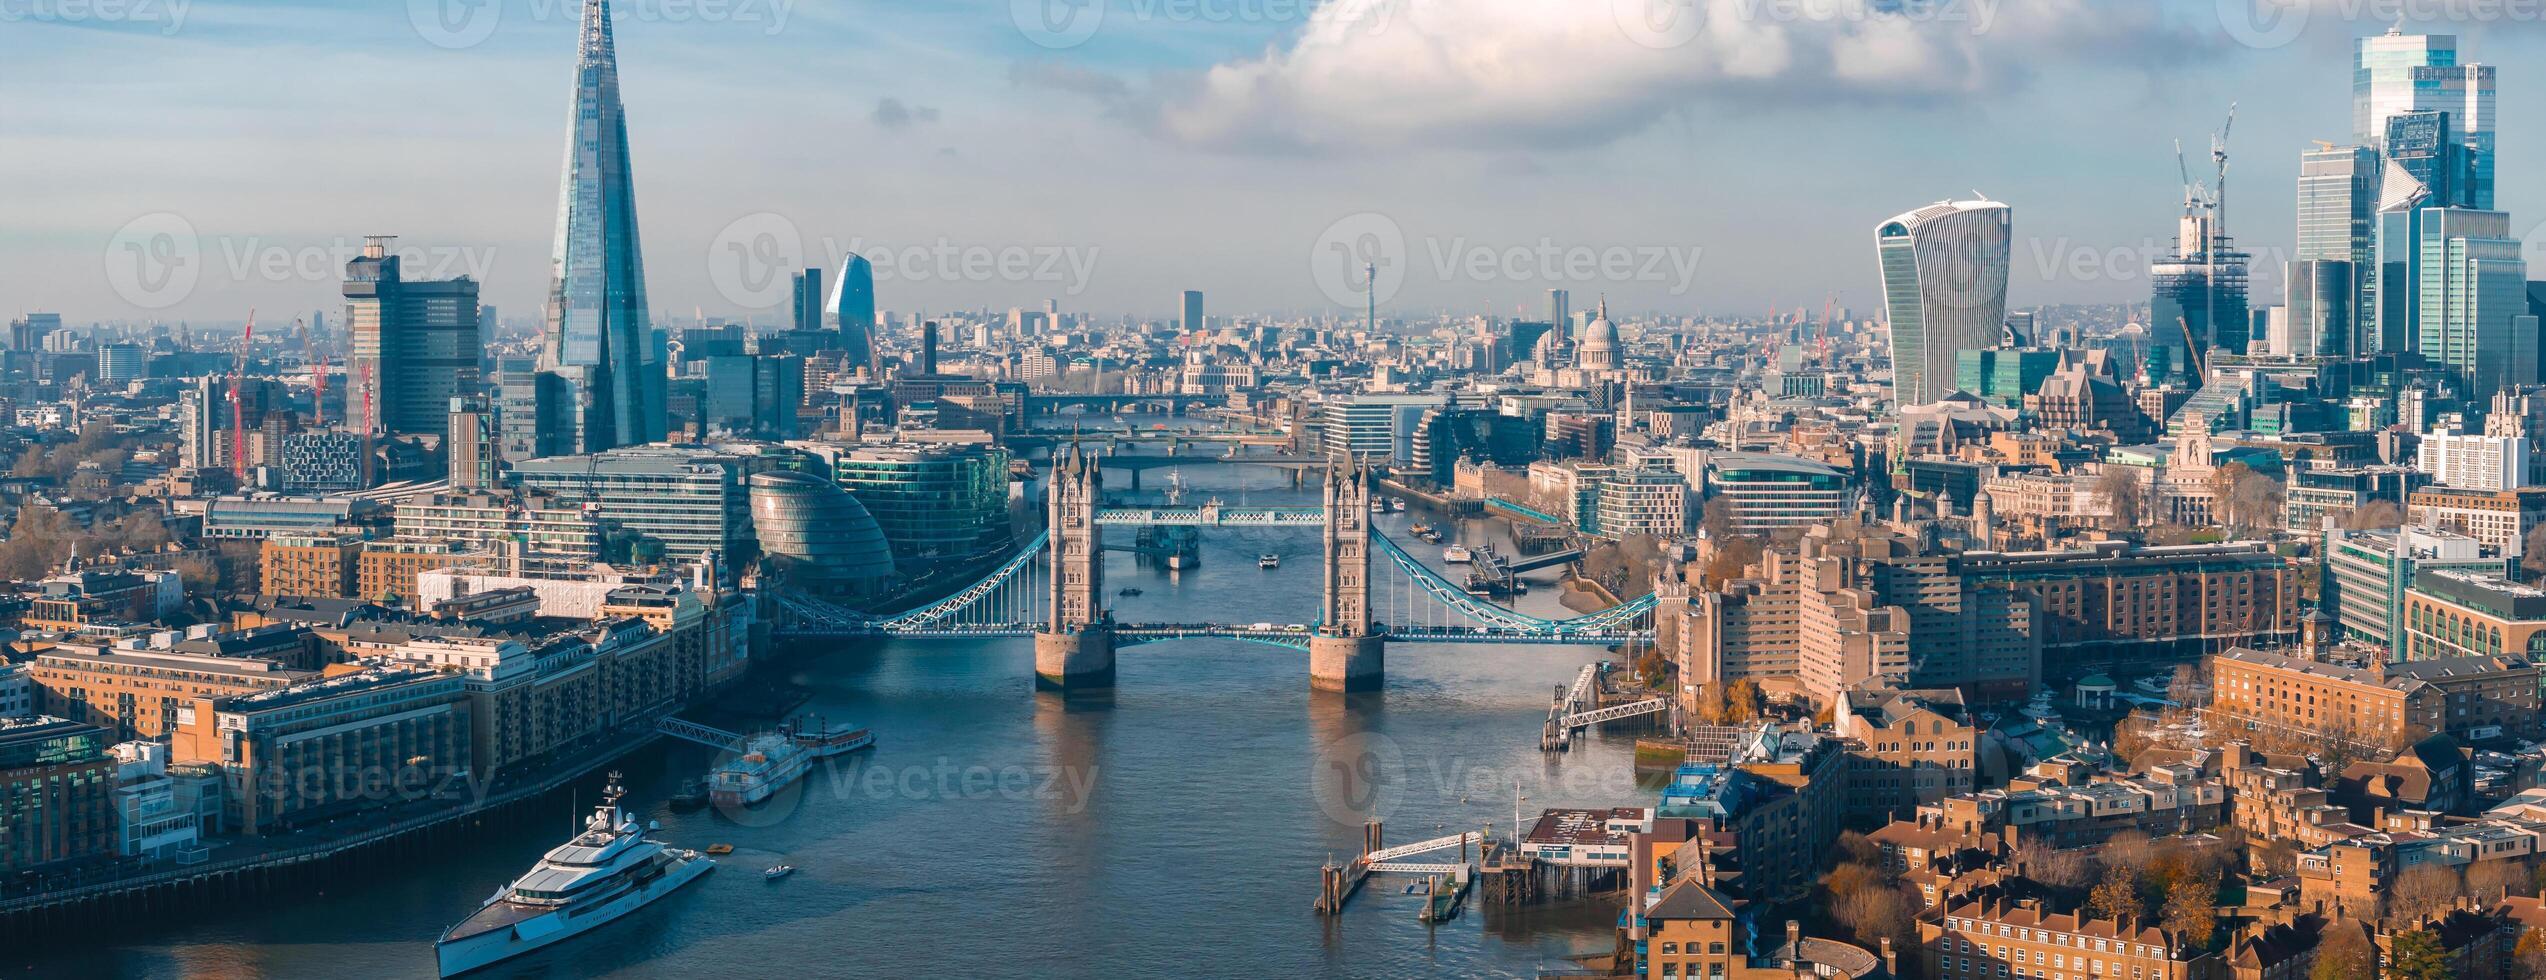 Antenne Aussicht von das ikonisch Turm Brücke verbinden Londong mit Southwark foto